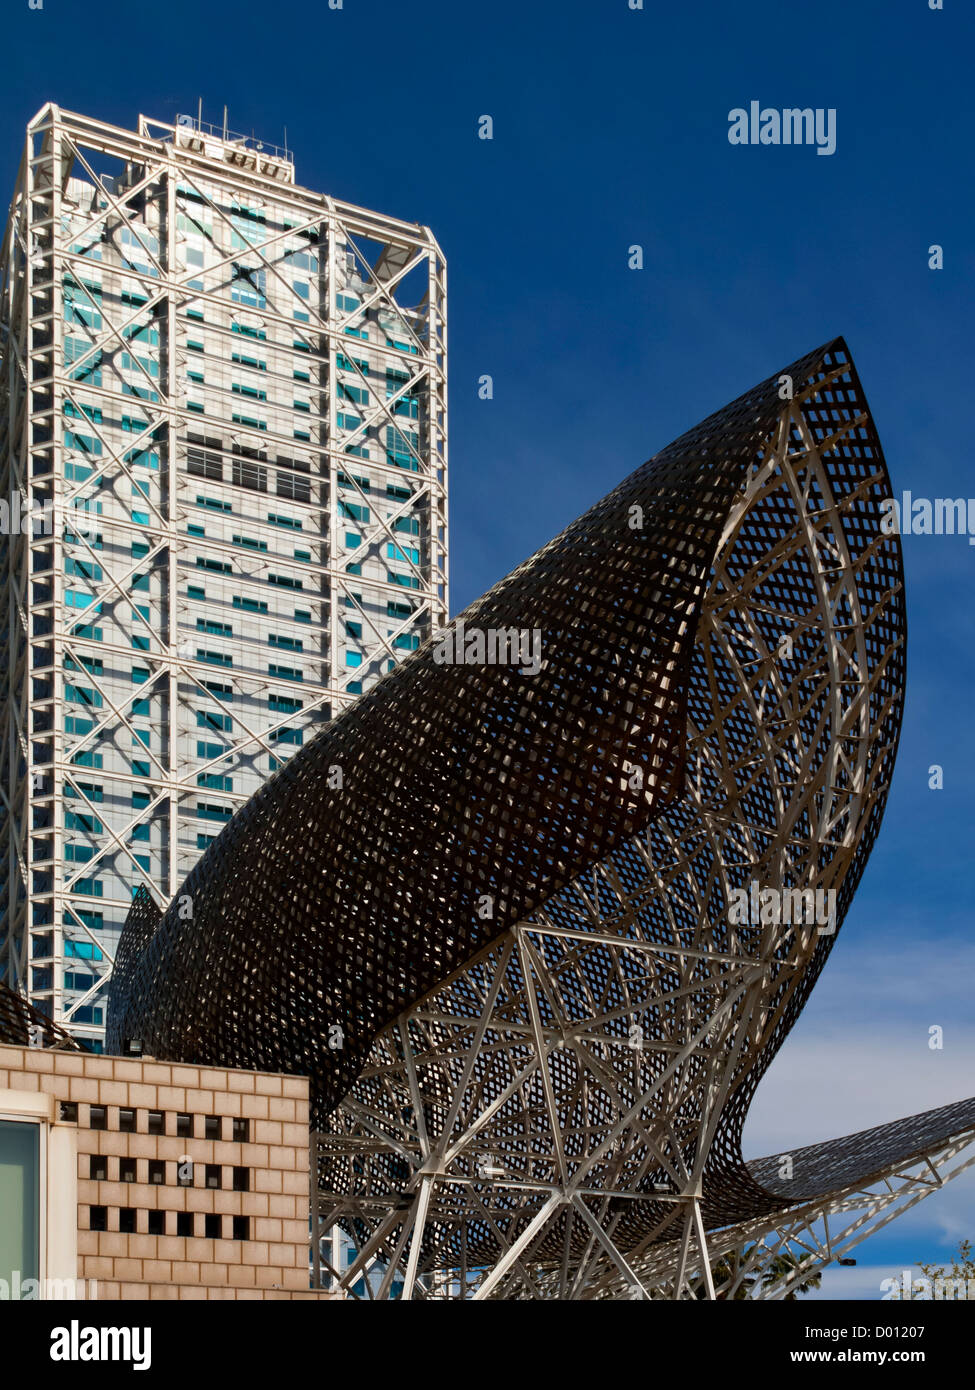 Sculpture Poisson par Frank Gehry à Barceloneta Port Olimpic Barcelona La Catalogne Espagne construit pour les Jeux Olympiques de 1992 Banque D'Images